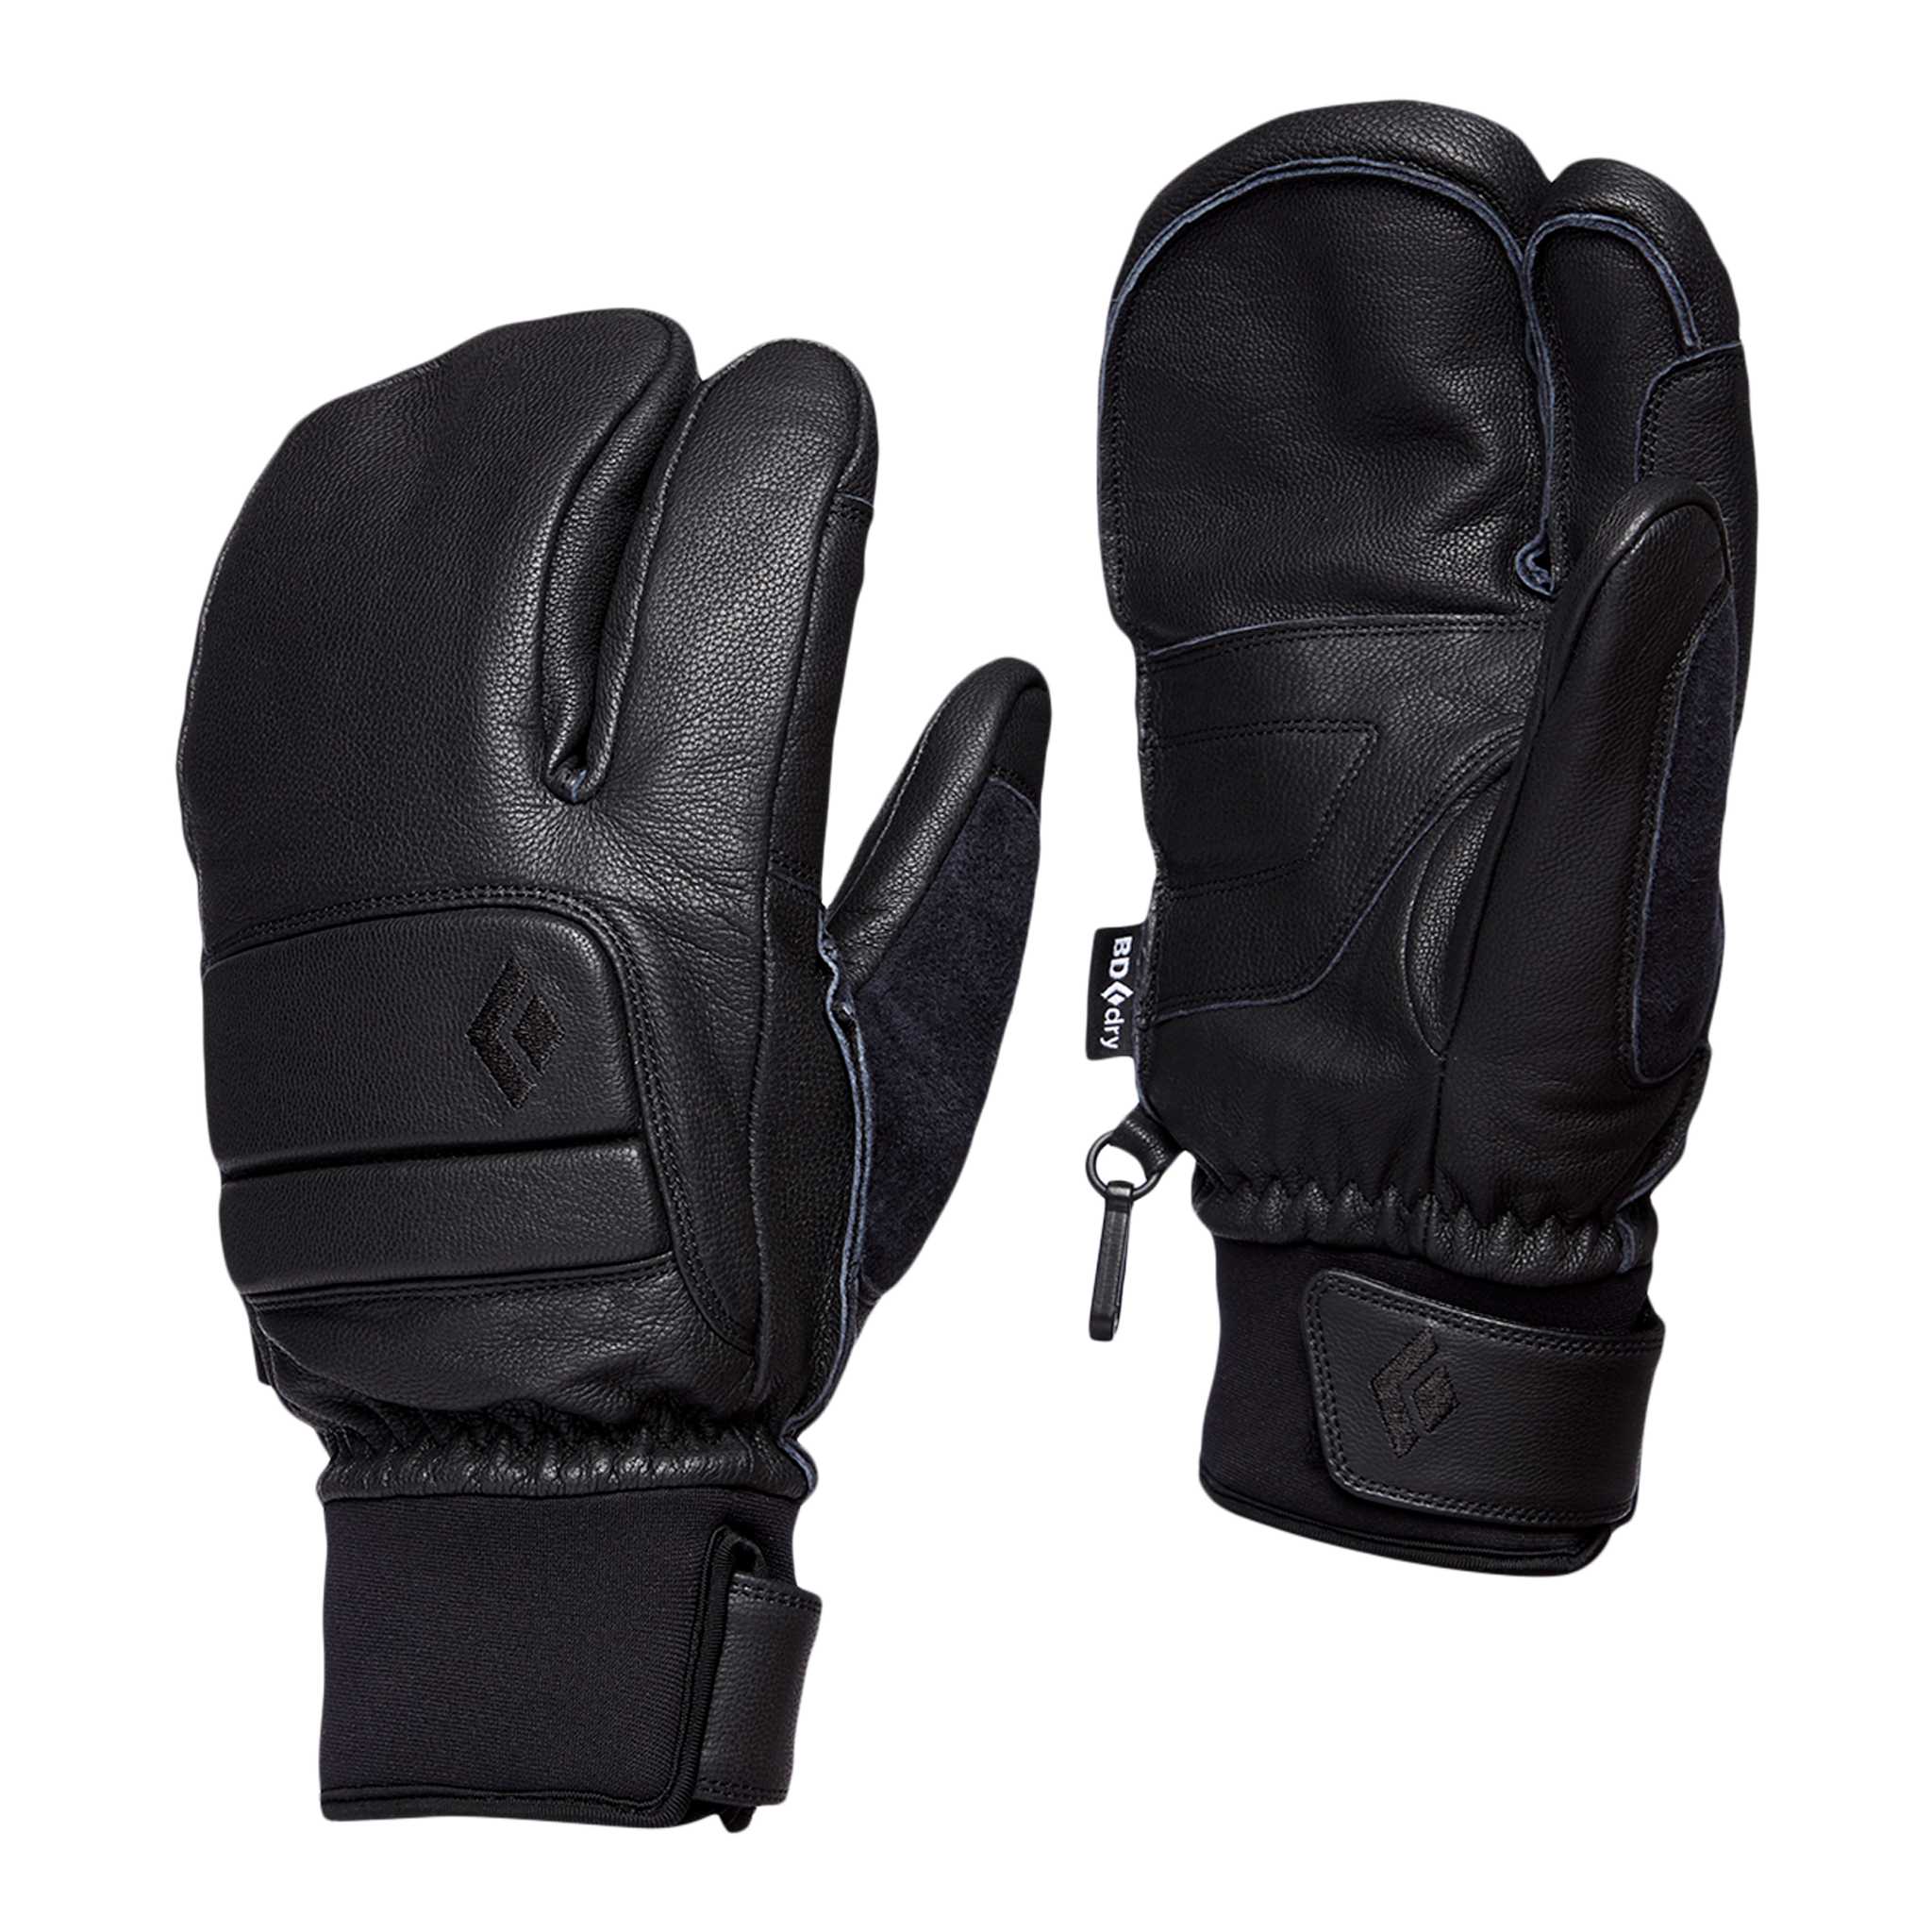 Black Diamond Equipment Men's Spark Finger Gloves , Medium Smoke